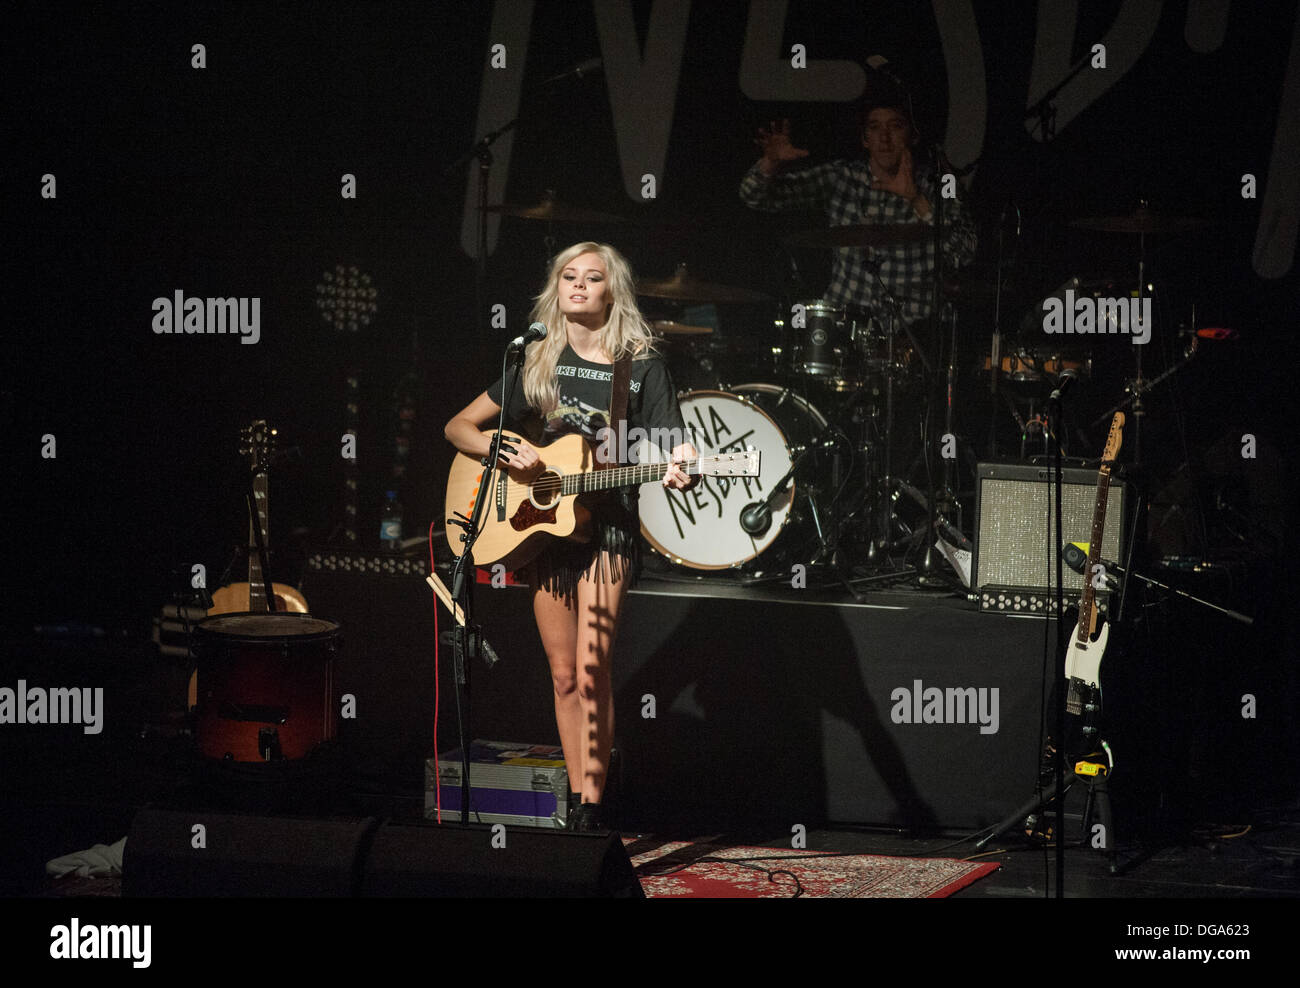 Glasgow, Ecosse, Royaume-Uni. 16 octobre 2013. La chanteuse écossaise Nina Nesbitt joue sur la scène à l'O2 ABC le 16 octobre 2013 à Glasgow, Écosse Crédit : Sam Kovak/Alamy Live News Banque D'Images